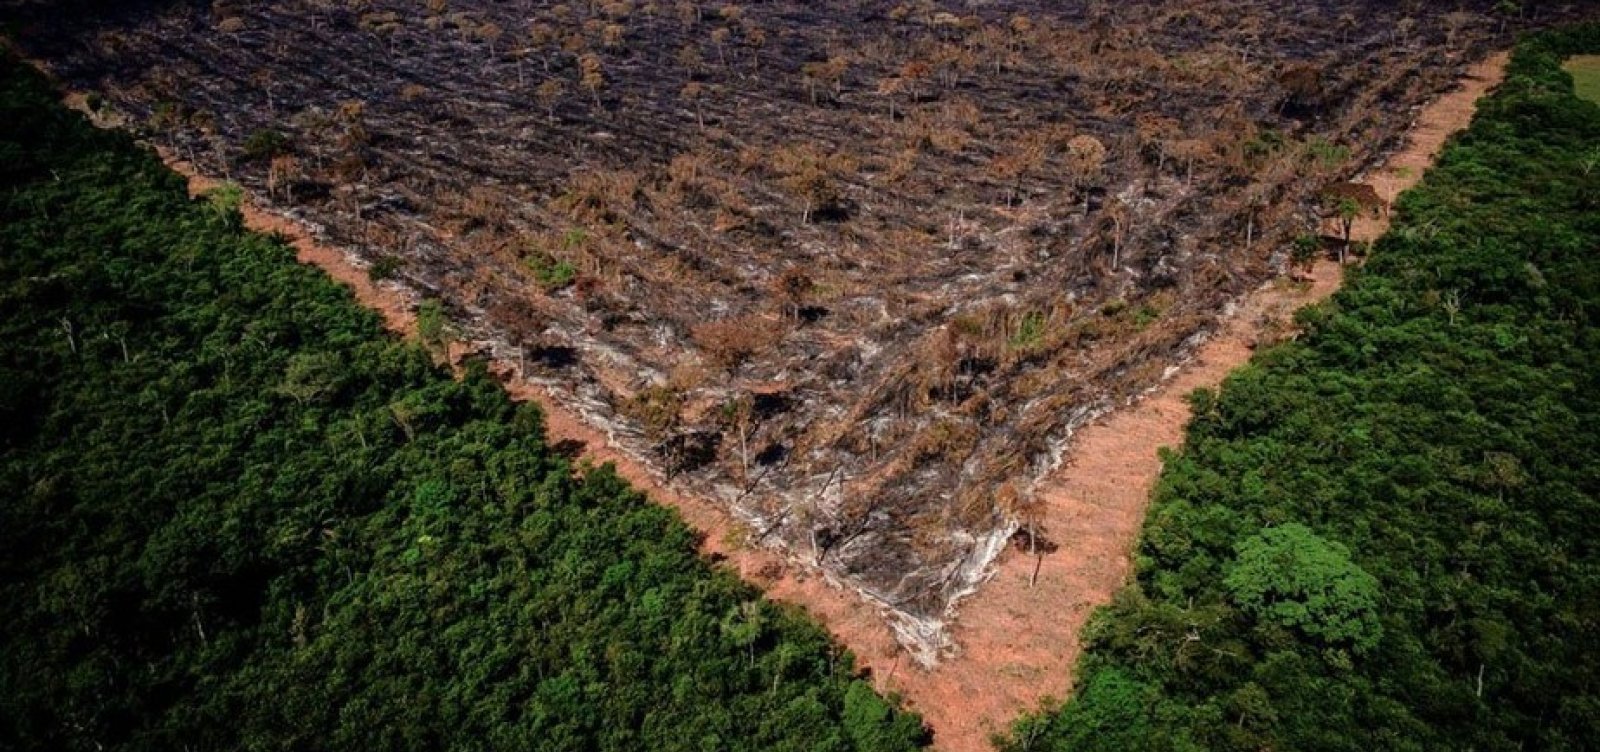 Ministro do Meio Ambiente busca US$1 bilhão em ajuda externa para conter desmatamento na Amazônia